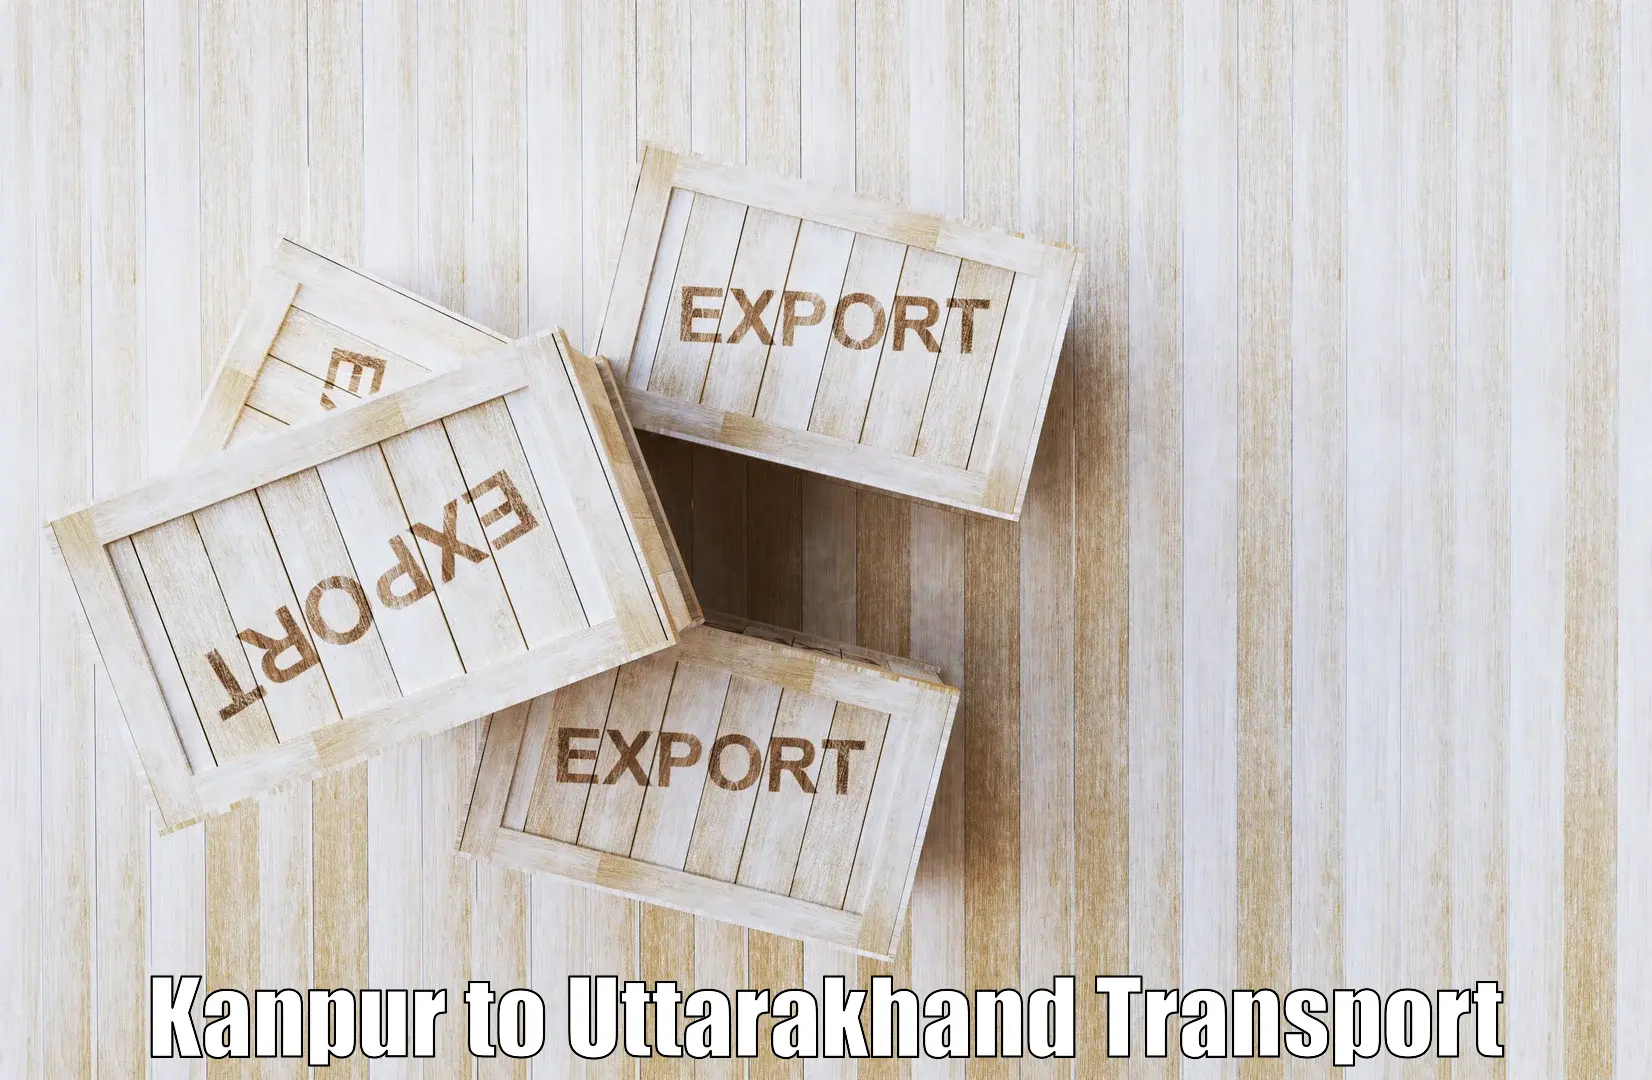 Online transport Kanpur to Tanakpur